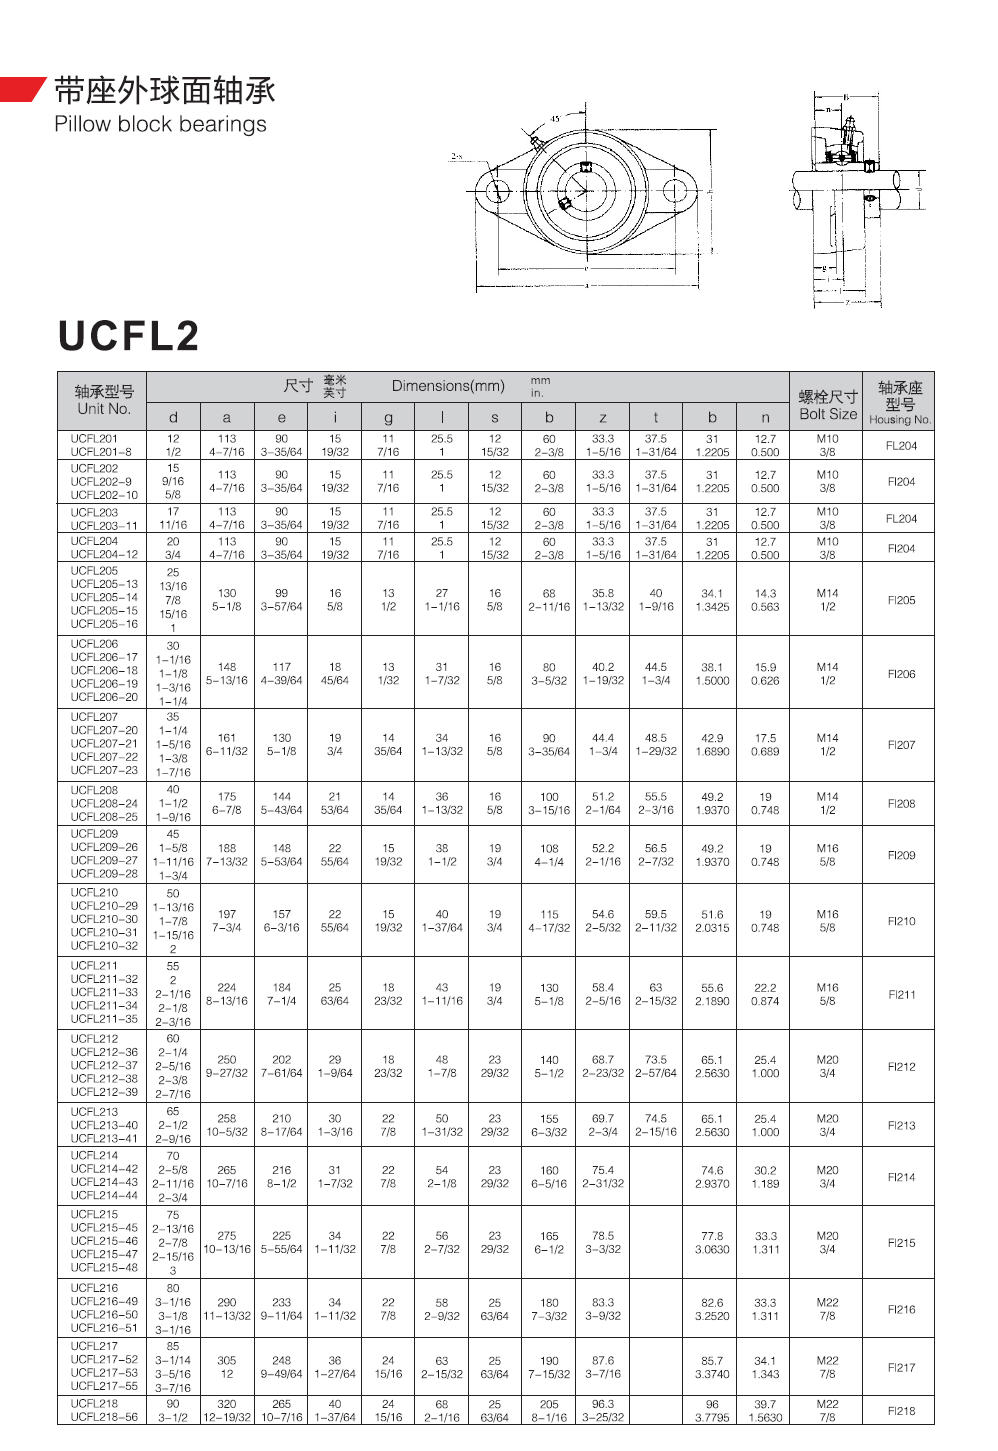 UCFL201	 | 
UCFL201-8	 | 
UCFL202	 | 
UCFL202-9	 | 
UCFL202-10	 | 
UCFL203	 | 
UCFL203-11	 | 
UCFL204	 | 
UCFL204-12	 | 
UCFL205	 | 
UCFL205-13	 | 
UCFL205-14	 | 
UCFL205-15	 | 
UCFL205-16	 | 
UCFL206	 | 
UCFL206-17	 | 
UCFL206-18	 | 
UCFL206-19	 | 
UCFL206-20	 | 
UCFL207	 | 
UCFL207-20	 | 
UCFL207-21	 | 
UCFL207-22	 | 
UCFL207-23	 | 
UCFL208	 | 
UCFL208-24	 | 
UCFL208-25	 | 
UCFL209	 | 
UCFL209-26	 | 
UCFL209-27	 | 
UCFL209-28	 | 
UCFL210	 | 
UCFL210-29	 | 
UCFL210-30	 | 
UCFL210-31	 | 
UCFL210-32	 | 
UCFL211	 | 
UCFL211-32	 | 
UCFL211-33	 | 
UCFL211-34	 | 
UCFL211-35	 | 
UCFL212	 | 
UCFL212-36	 | 
UCFL212-37	 | 
UCFL212-38	 | 
UCFL212-39	 | 
UCFL213	 | 
UCFL213-40	 | 
UCFL213-41	 | 
UCFL214	 | 
UCFL214-42	 | 
UCFL214-43	 | 
UCFL214-44	 | 
UCFL215	 | 
UCFL215-45	 | 
UCFL215-46	 | 
UCFL215-47	 | 
UCFL215-48	 | 
UCFL216	 | 
UCFL216-49	 | 
UCFL216-50	 | 
UCFL216-51	 | 
UCFL217	 | 
UCFL217-52	 | 
UCFL217-53	 | 
UCFL217-55	 | 
UCFL218	 | 
UCFL218-56	 | 